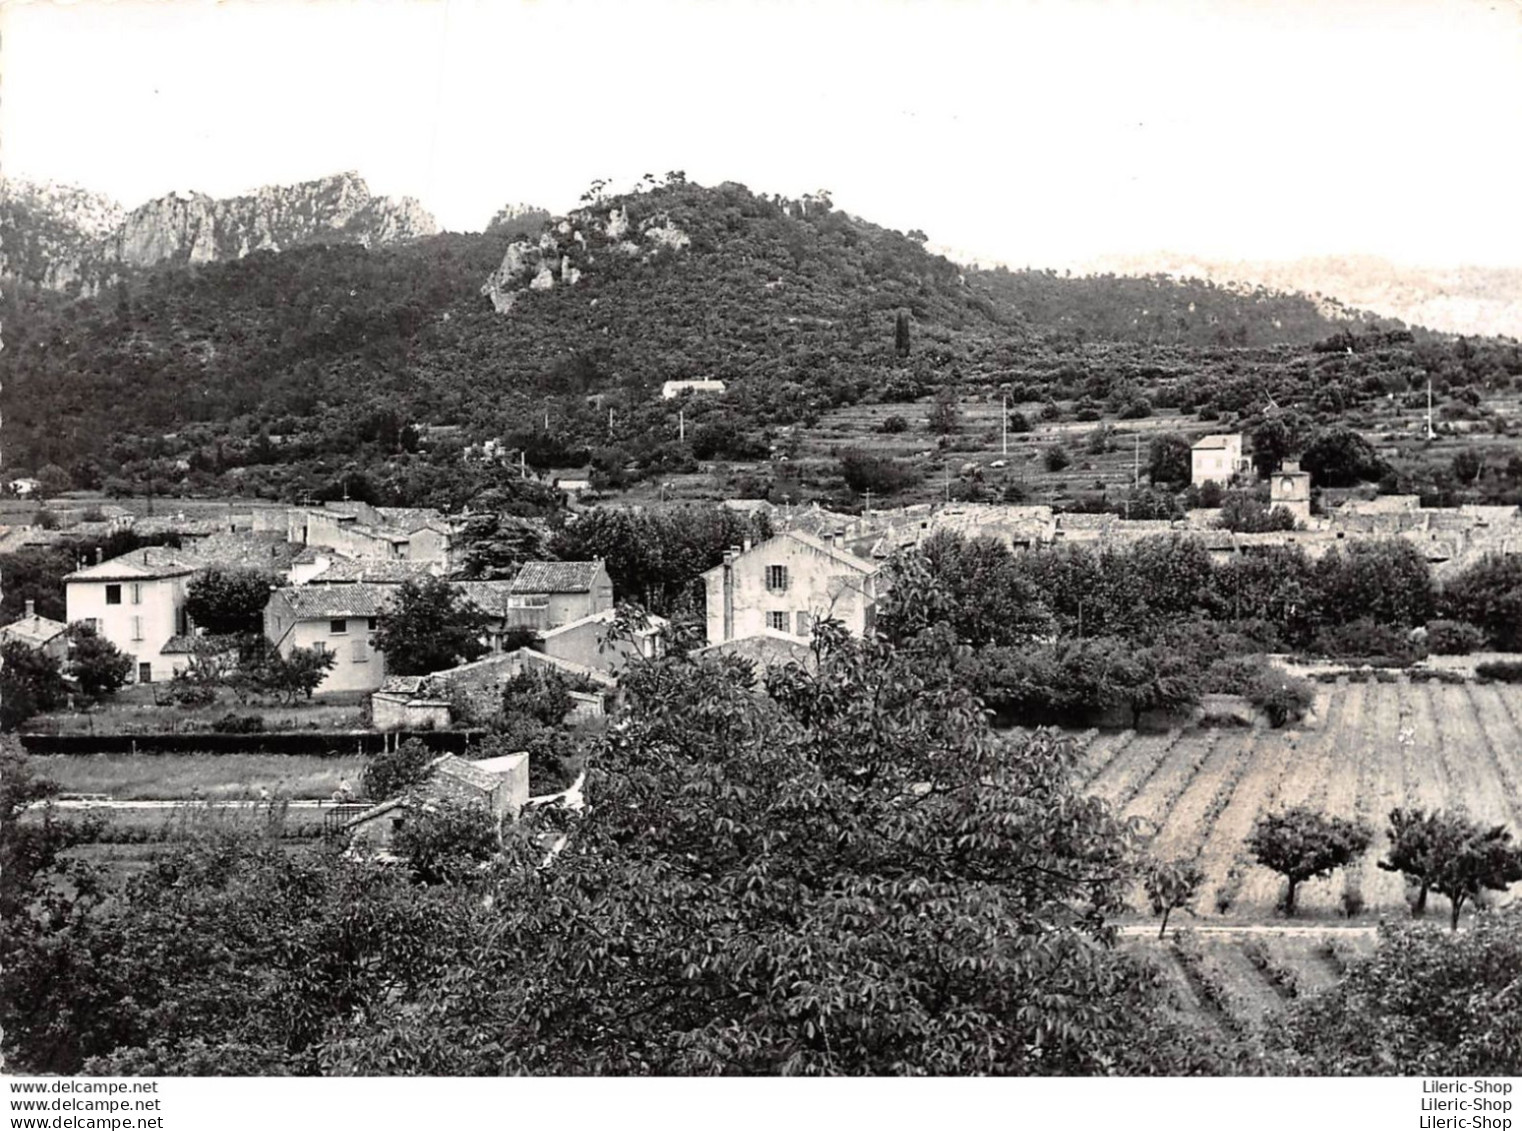 LA ROQUEBRUSSANNE (83) Cpsm ± 1960►VUE GÉNÉRALE►R. CAUJOLLE PHOTOGRAPHE-ÉDITEUR - La Roquebrussanne